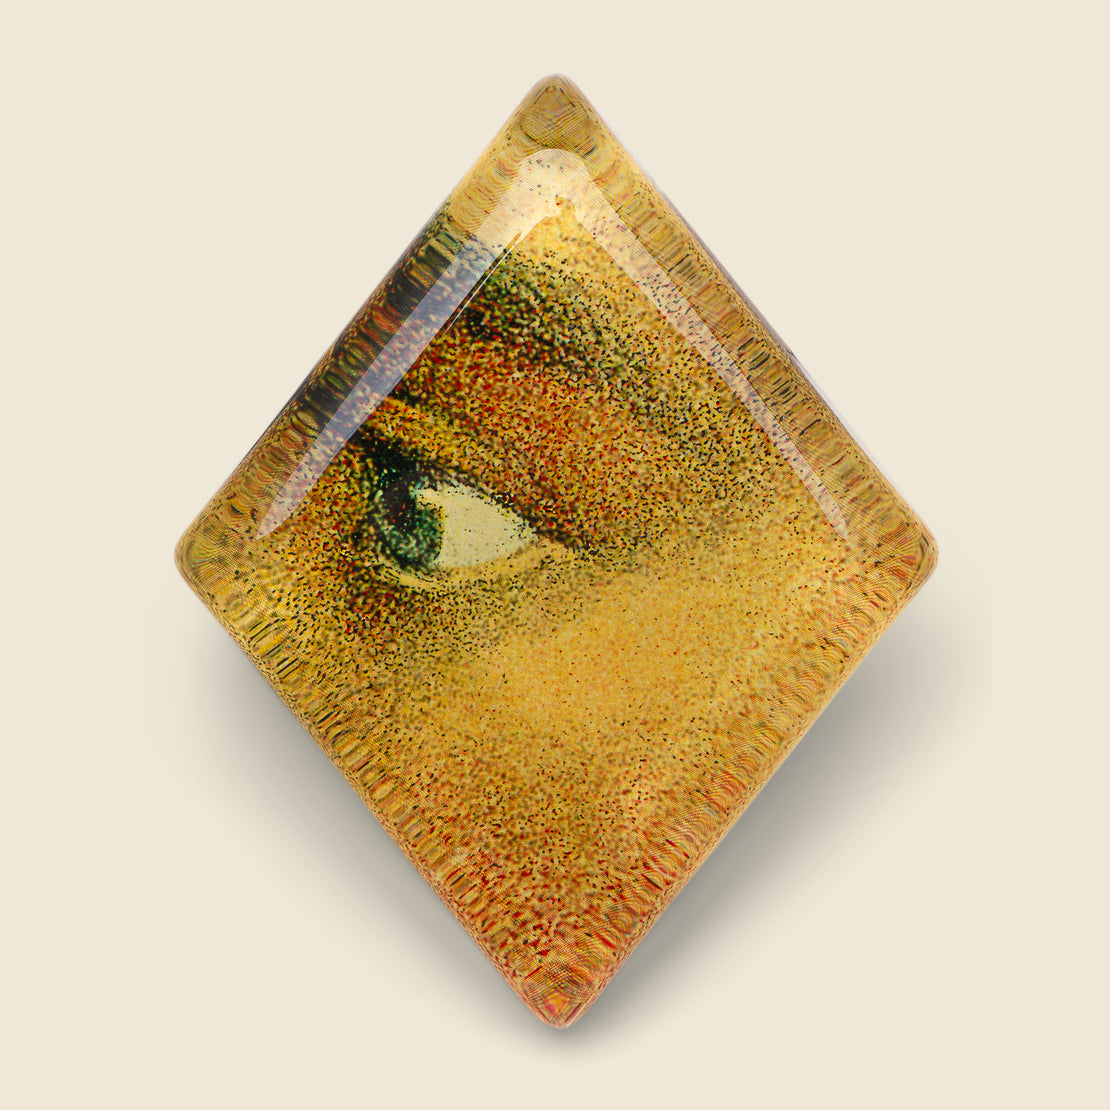 John Derian A Man's Left Eye Diamond Paperweight